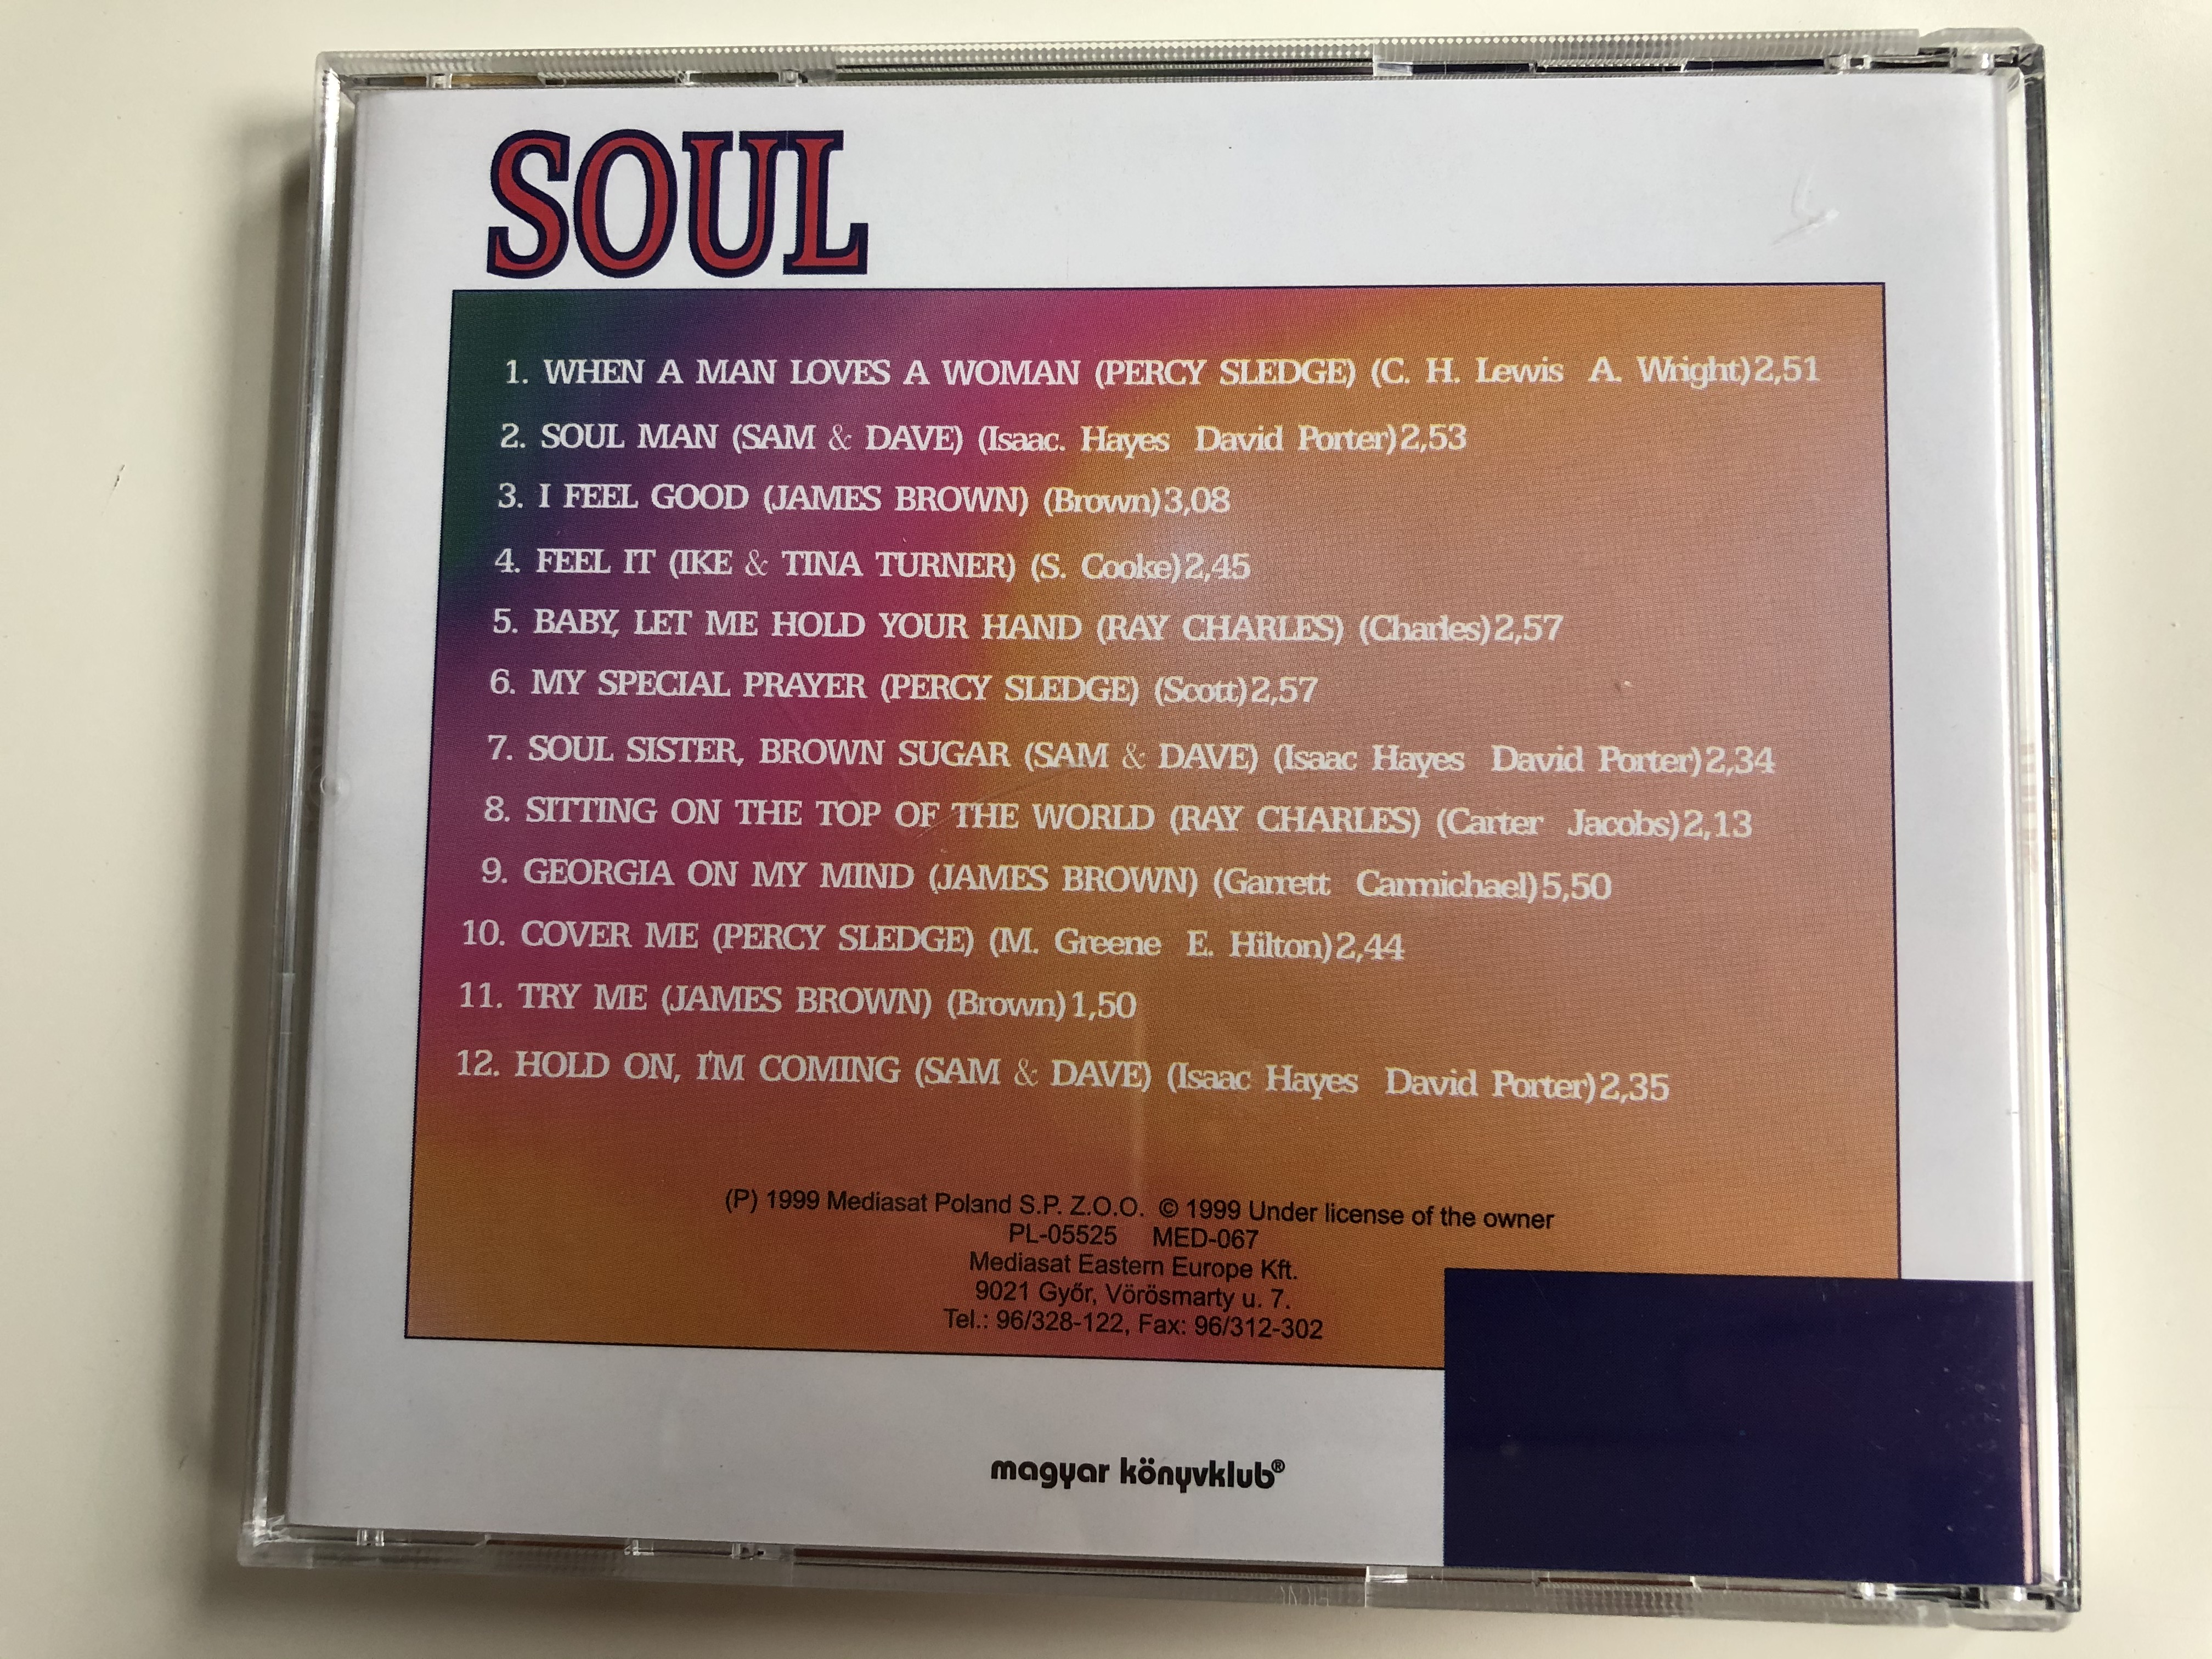 soul-magyar-k-nyvklub-mediasat-poland-audio-cd-1999-med-067-4-.jpg